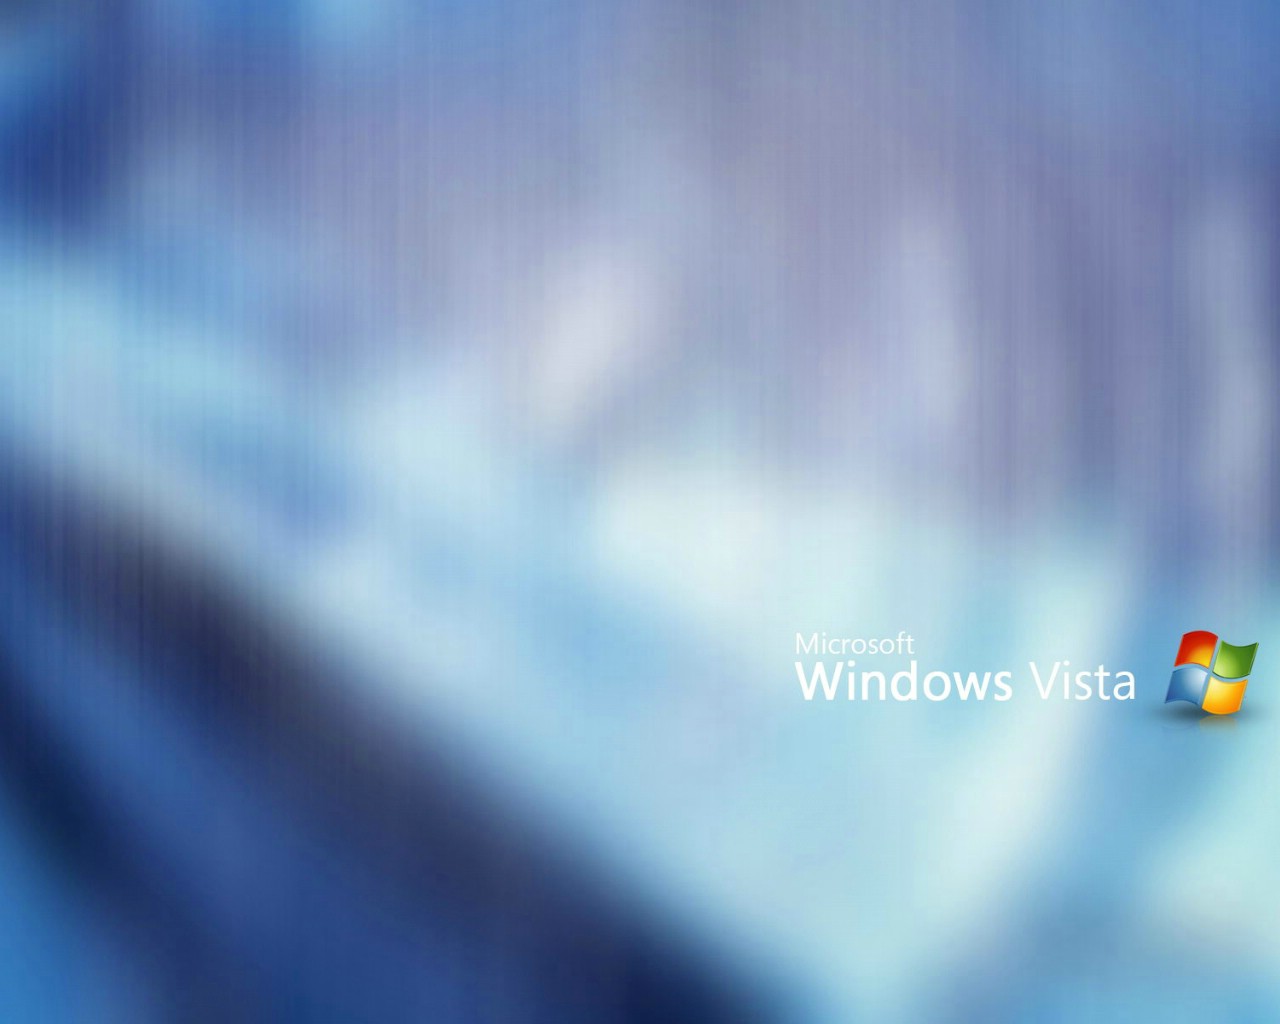 壁纸1280x1024Windows Vista壁纸 壁纸18壁纸 Windows Vista壁纸壁纸 Windows Vista壁纸图片 Windows Vista壁纸素材 系统壁纸 系统图库 系统图片素材桌面壁纸